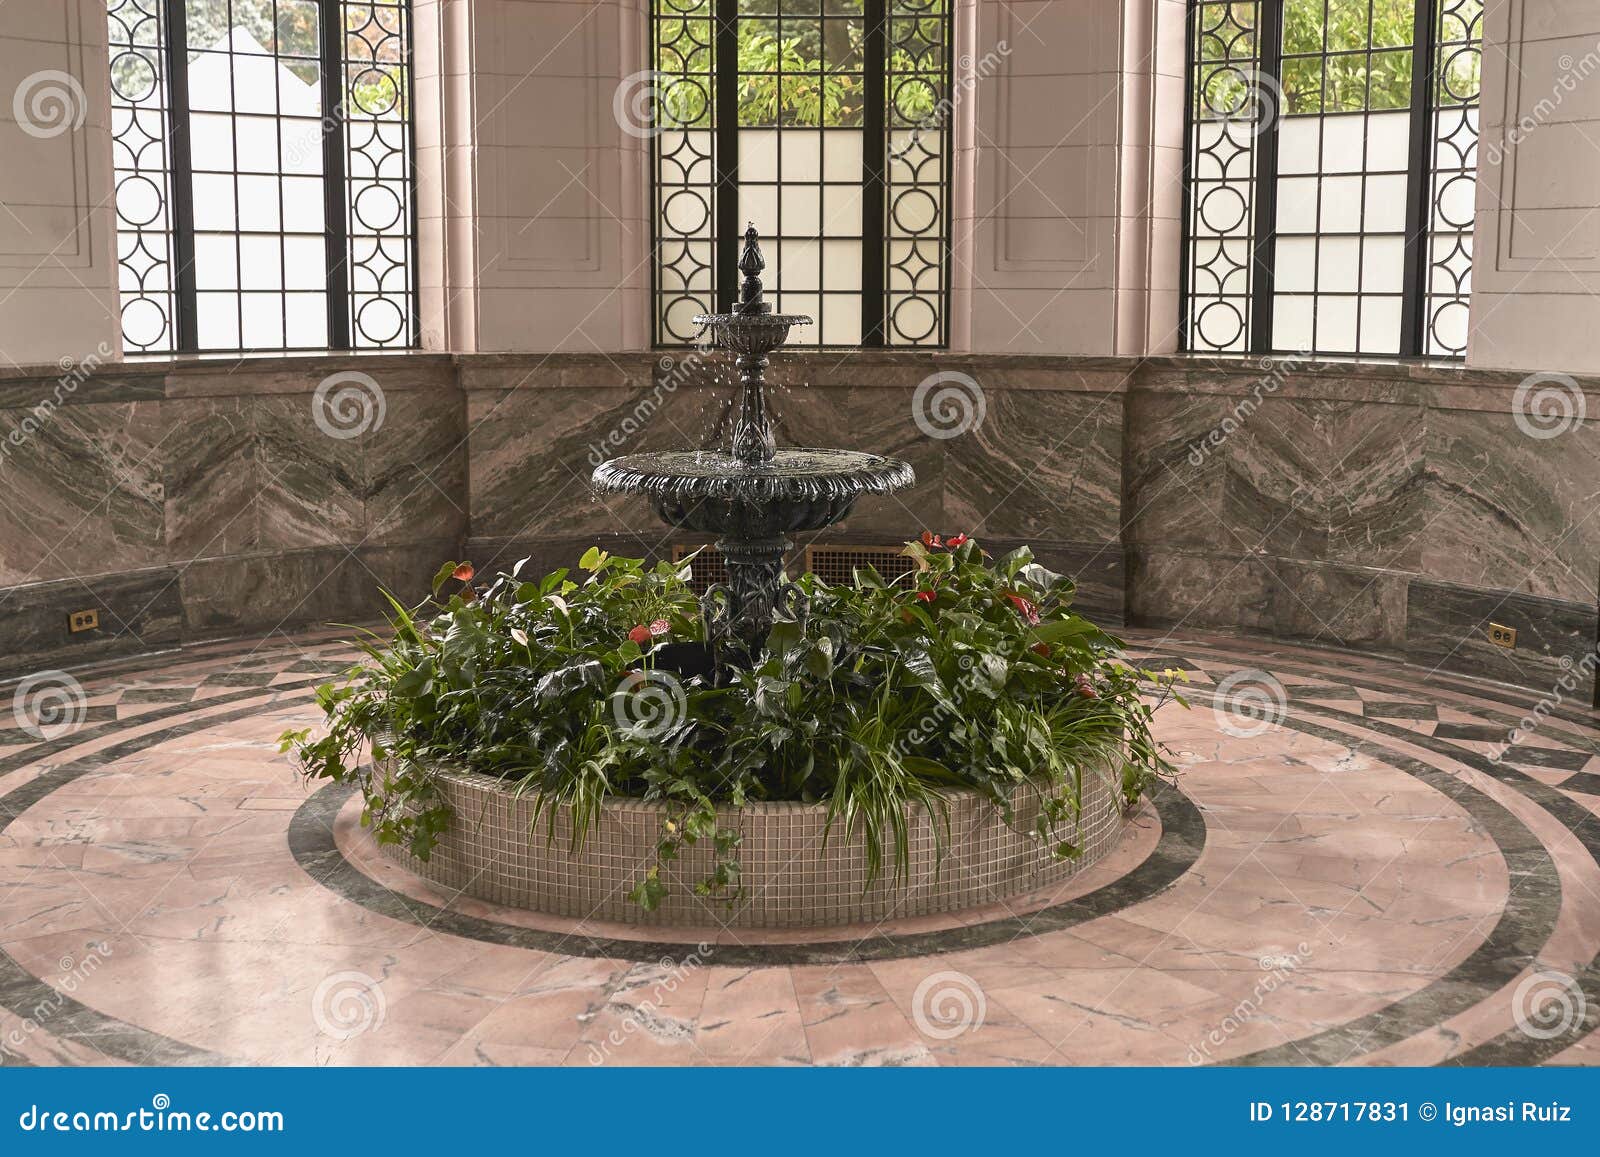 classic fountain in casa lomas